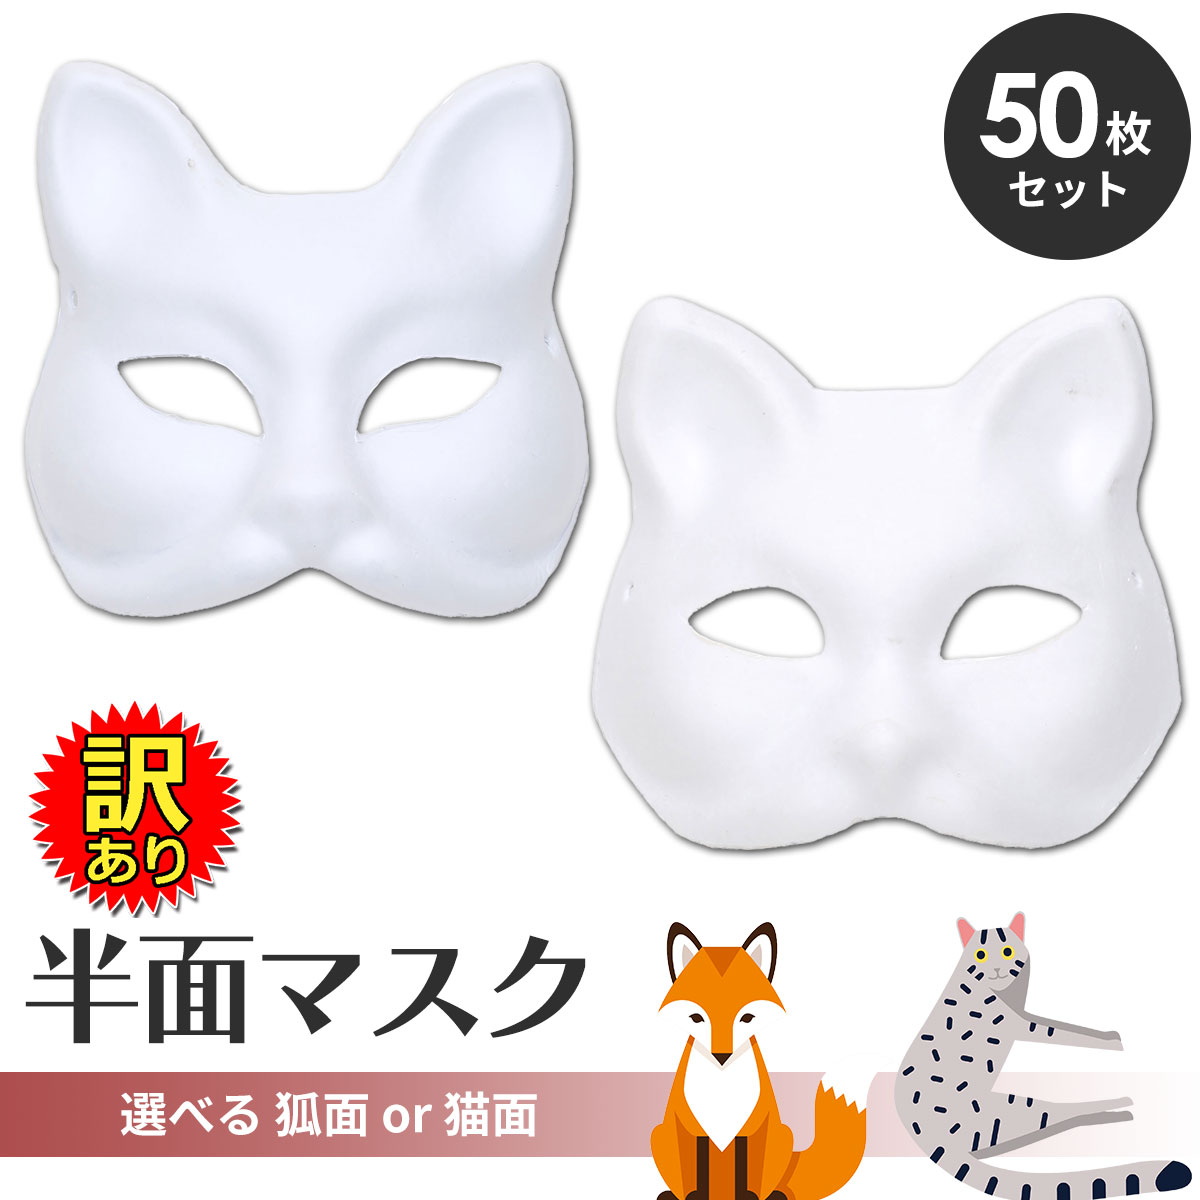 【訳あり】 狐面 猫面 半面 お面 マスク紙パルプ製 50枚セット